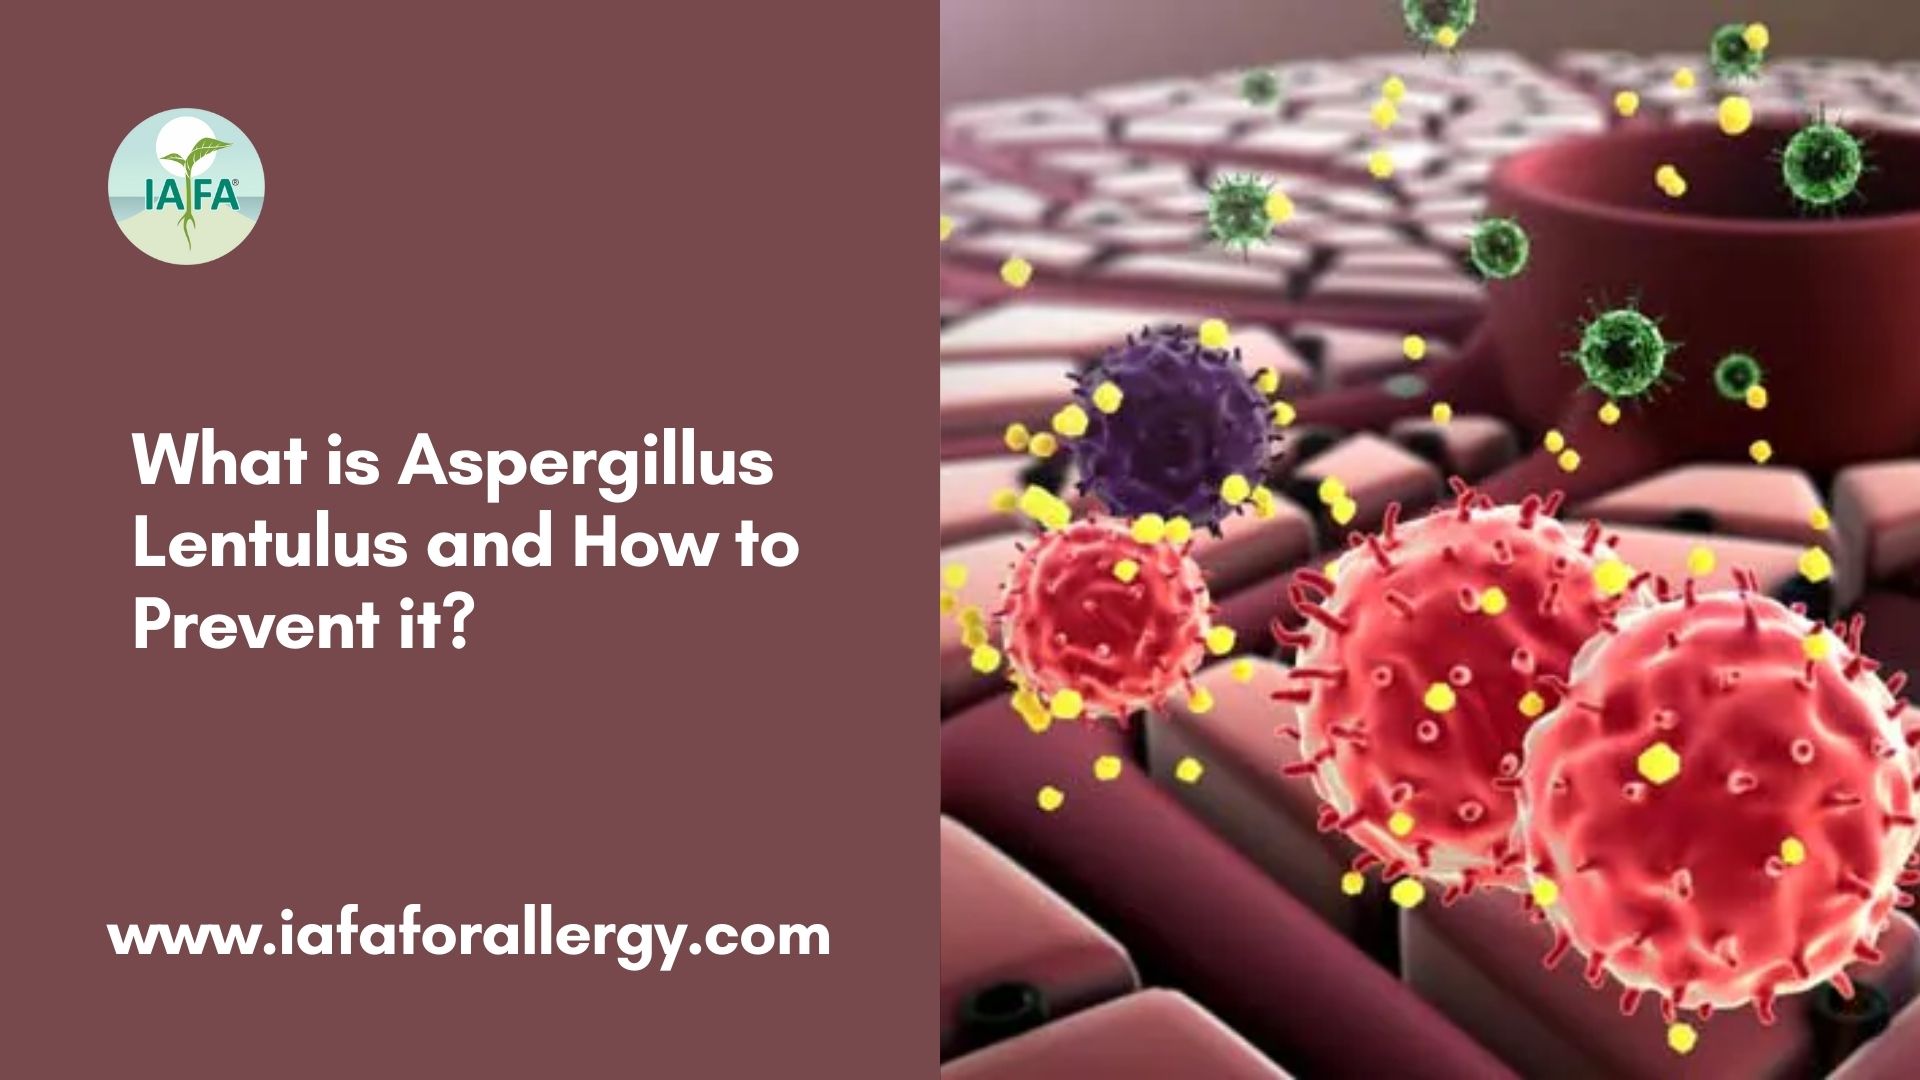 Prevention of Aspergillus Lentulus